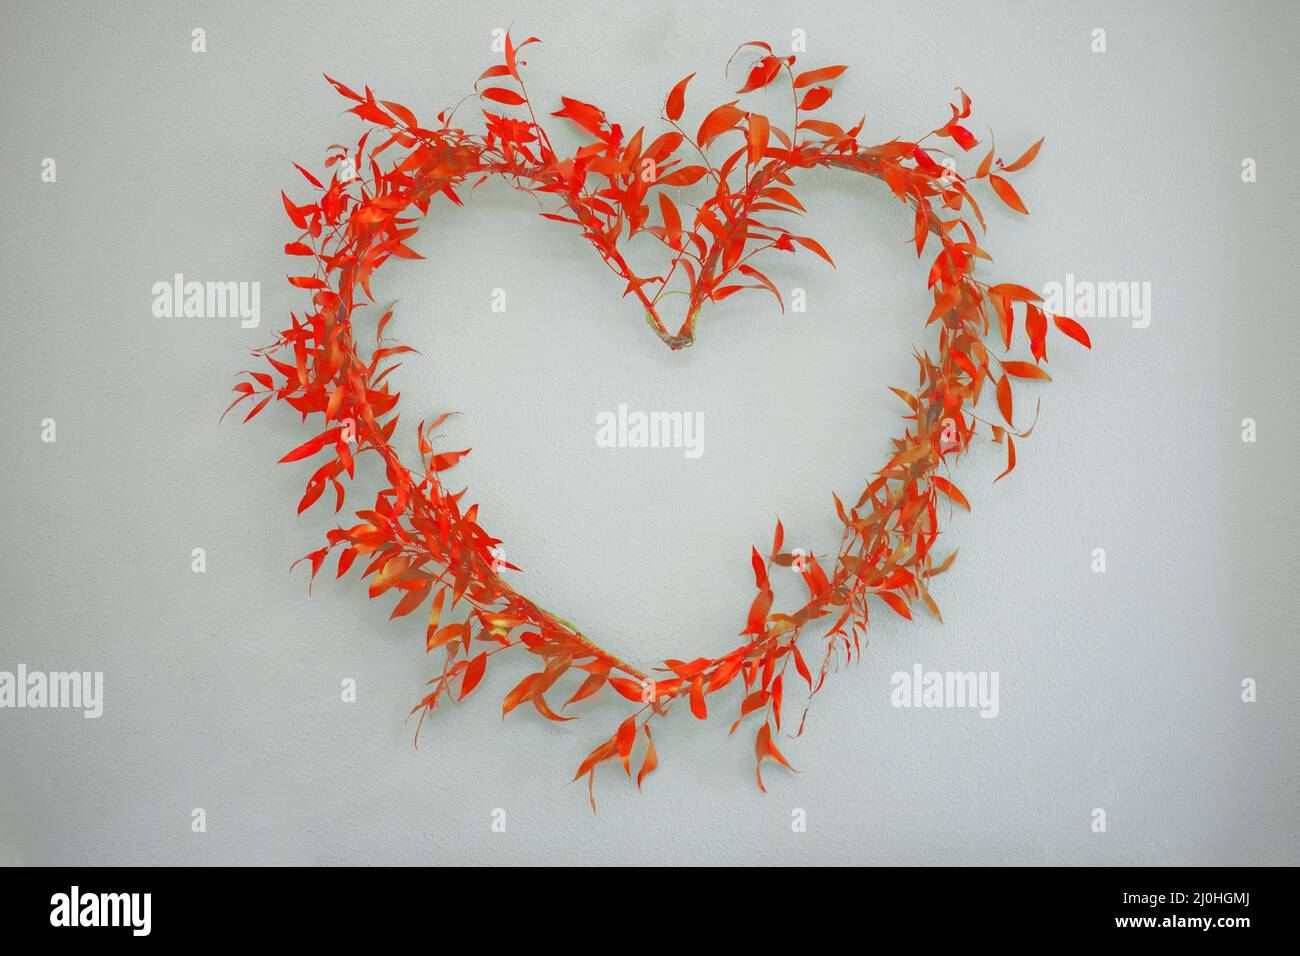 Simbolo del cuore arrangiato di rami di ruscus con foglie rosse su uno sfondo chiaro. Foto Stock